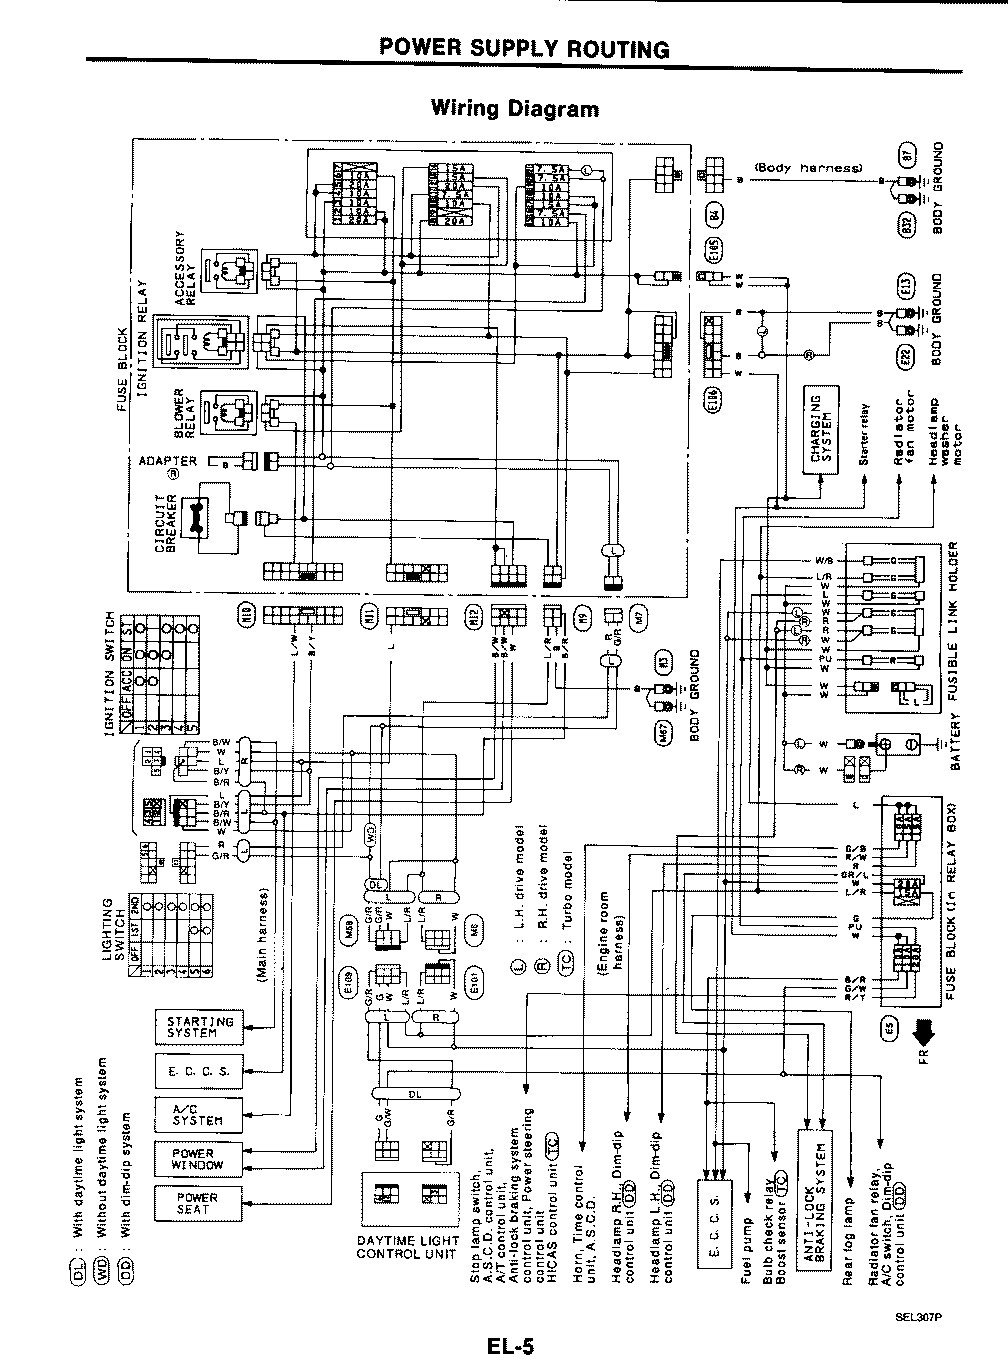 Nissan Wiring Diagram By Rickfihoutab1974 Deviantart 1989 240sx Stereo 240sx And Nissan Wiring Diagrams